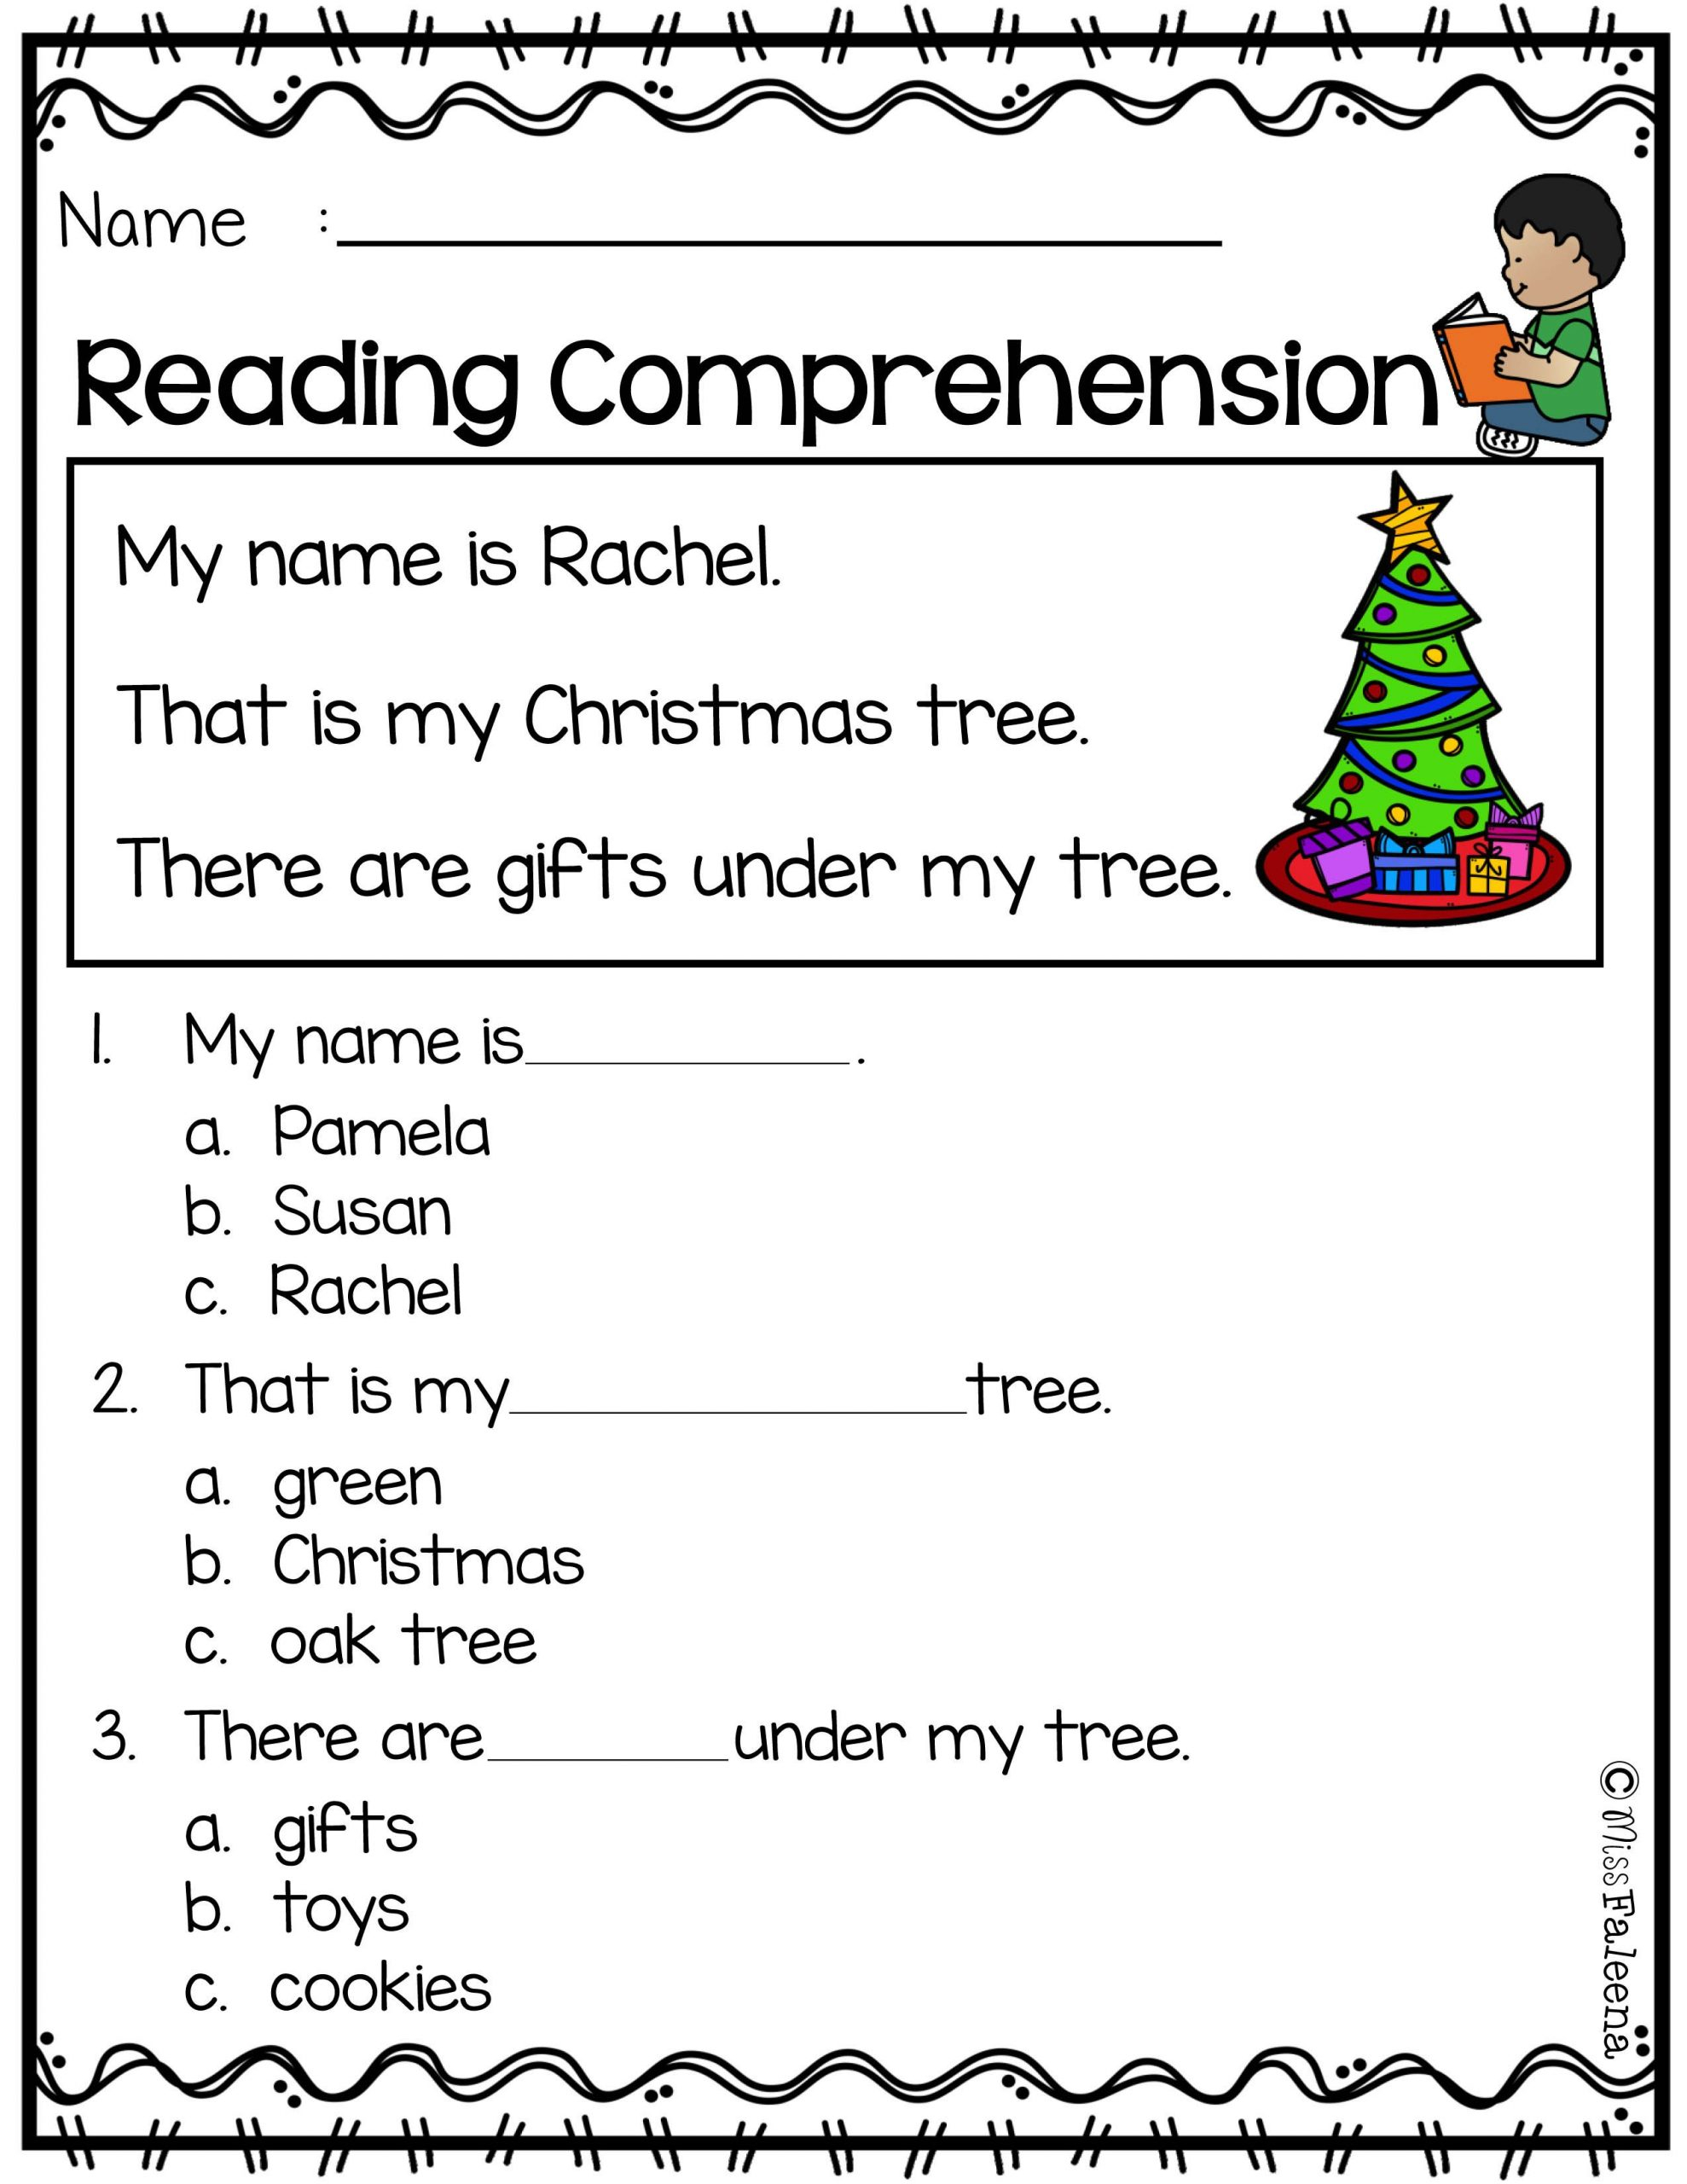 Reading Comprehension Practice Worksheet Education 1st Grade Free Kindergarten Easy Esl 